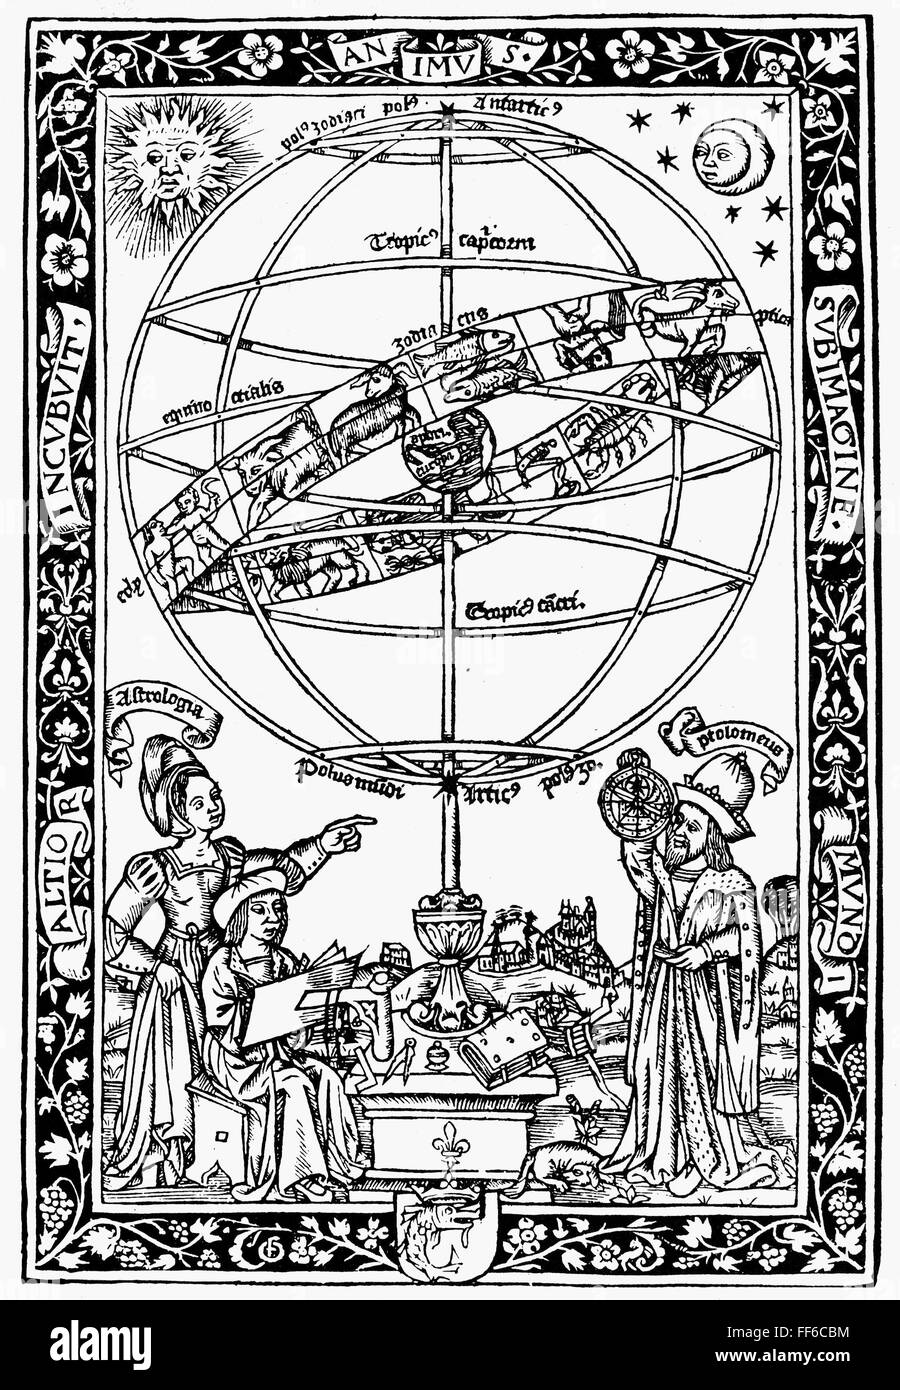 ARMILLARY SPHERE, 1531. /nJohannes de Sacrobosco's 'Textus de sphaera,' published in Paris. Woodcut, 1531. Stock Photo